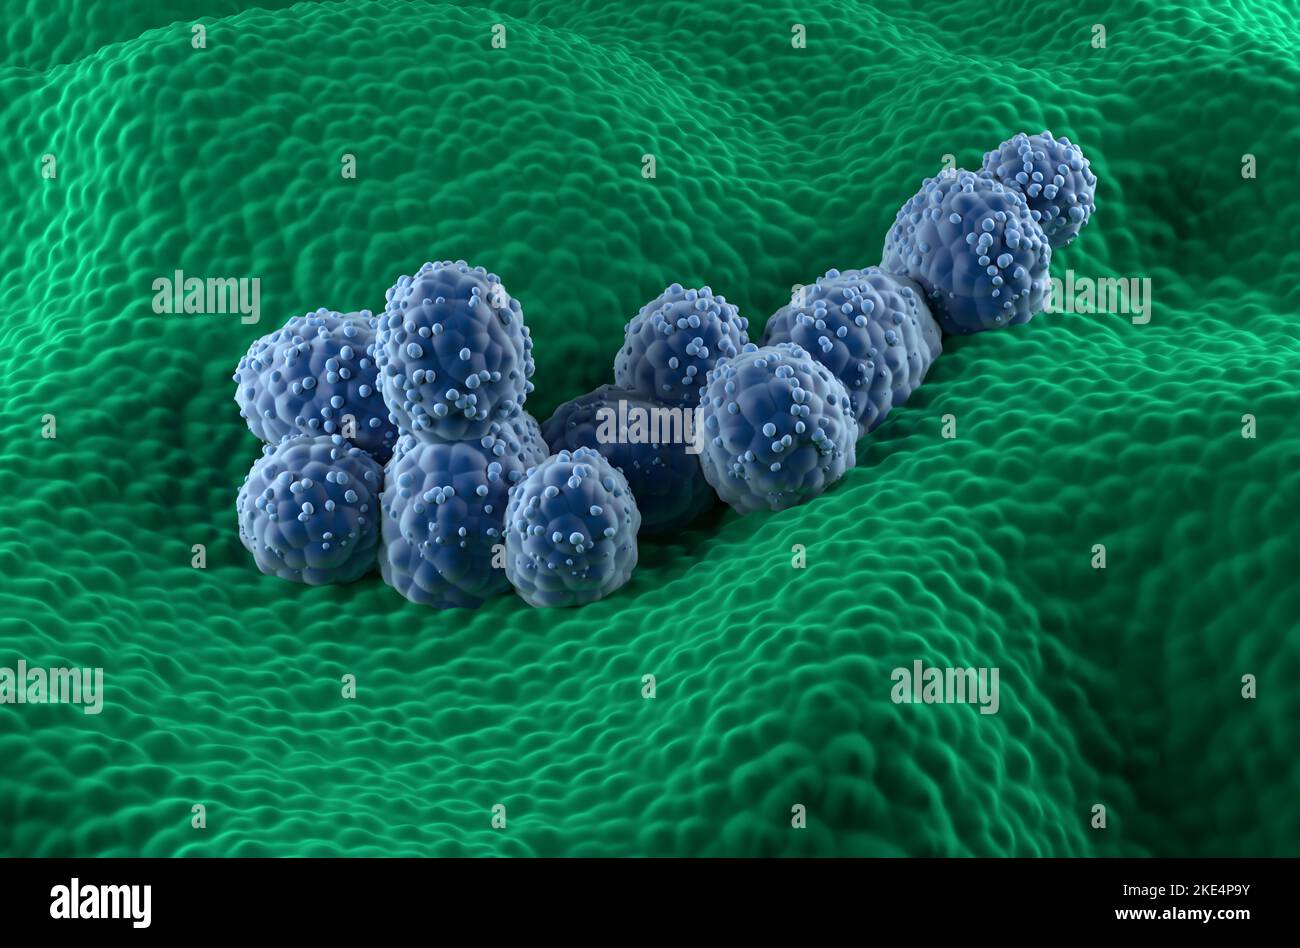 Cellule tumorali della prostata nell'epitelio ghiandolare prostatico - vista isometrica 3D illustrazione Foto Stock